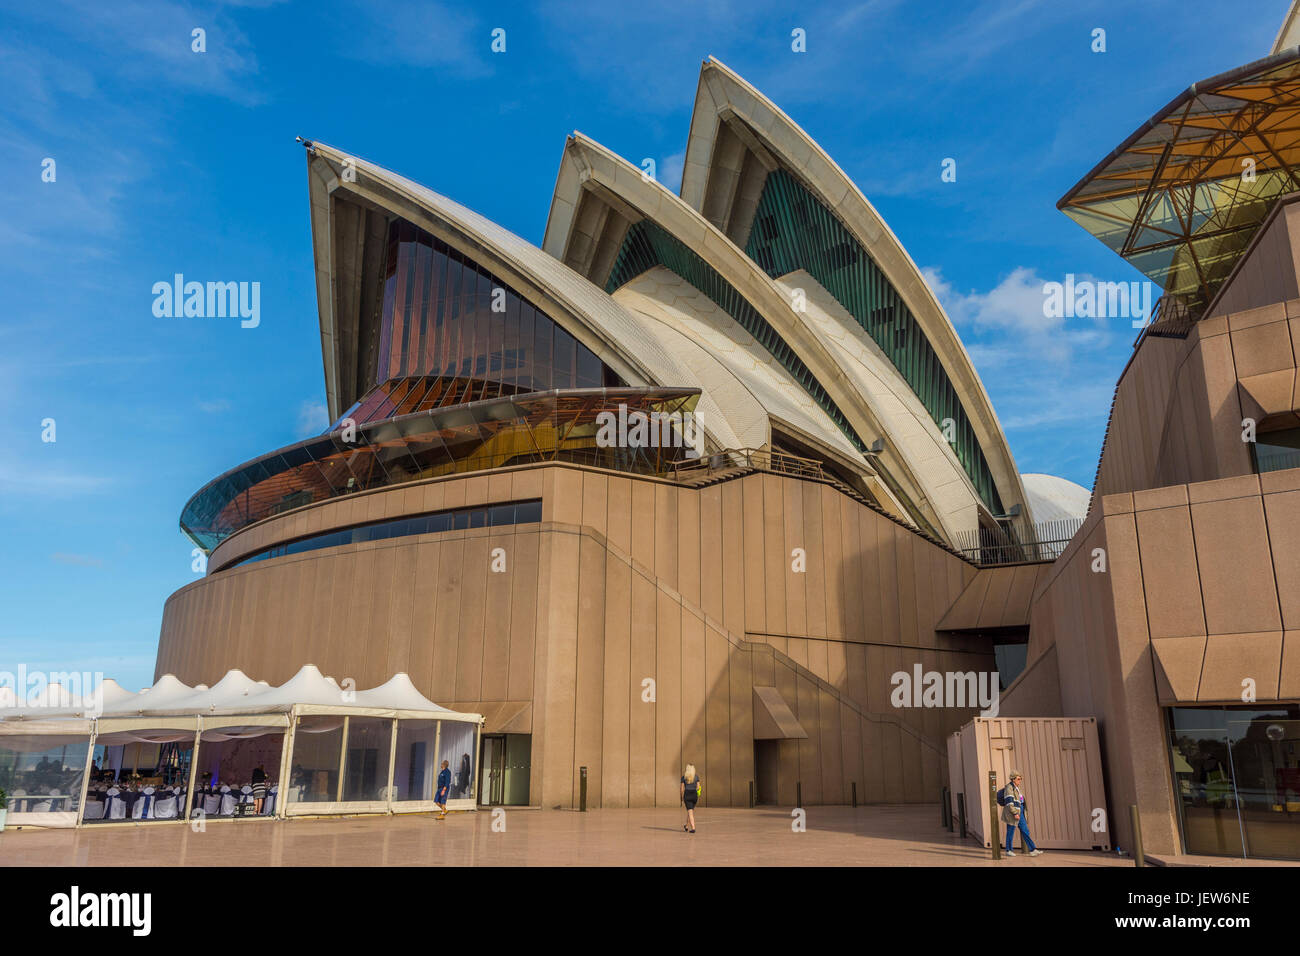 SYDNEY, AUSTRALIA - 19 de abril: Detalle de la Sydney Opera House, diseñado por el arquitecto danés Jørn Utzon es el famoso hito de sydney y uno de los más recon Foto de stock